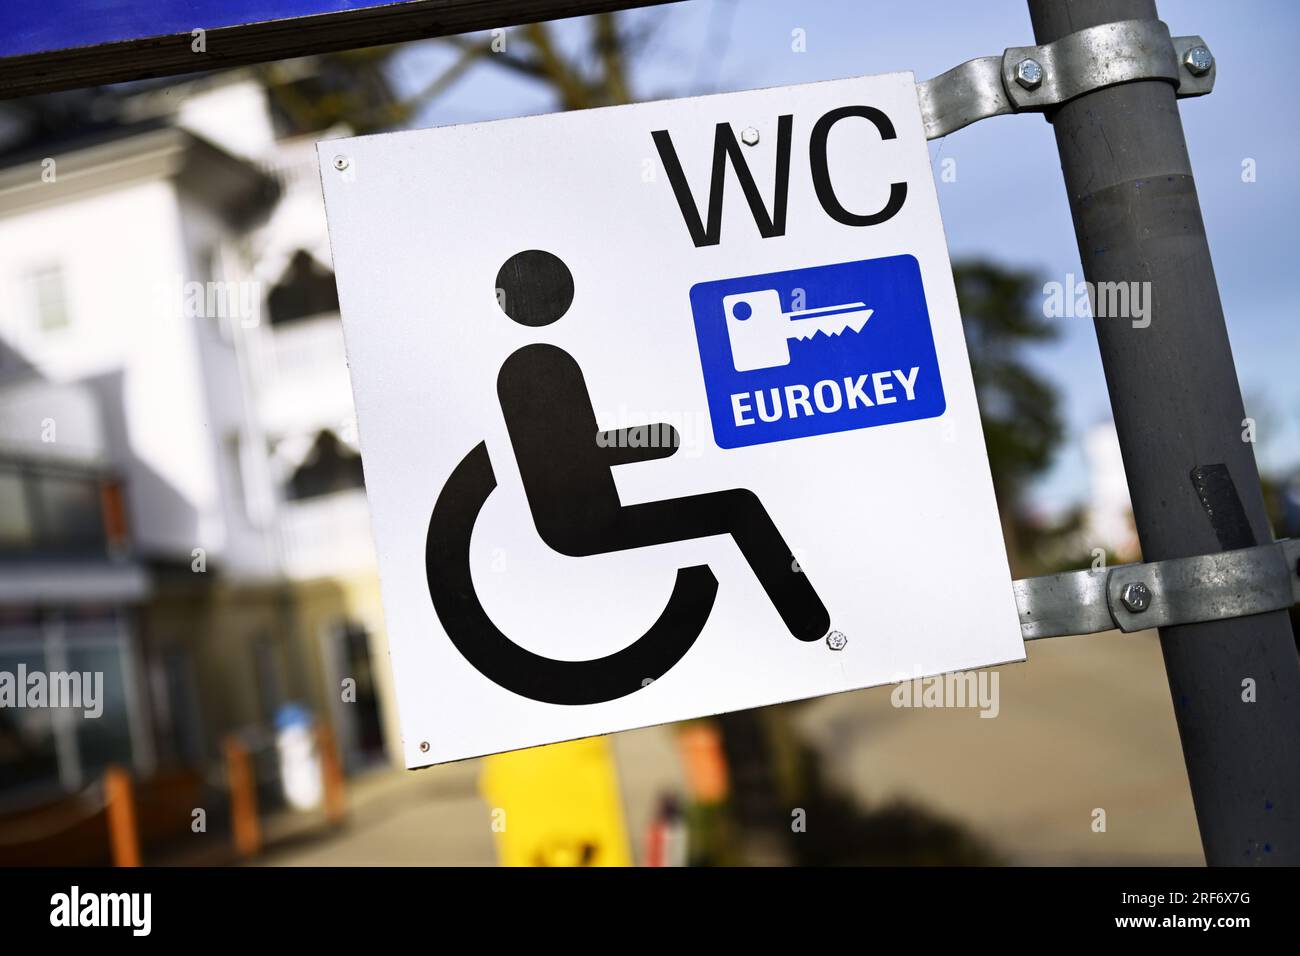 Wegweiser zu einem Behinderten-WC mit Eurokey-Zugang in Scharbeutz, Schleswig-Holstein, Deutschland Stock Photo